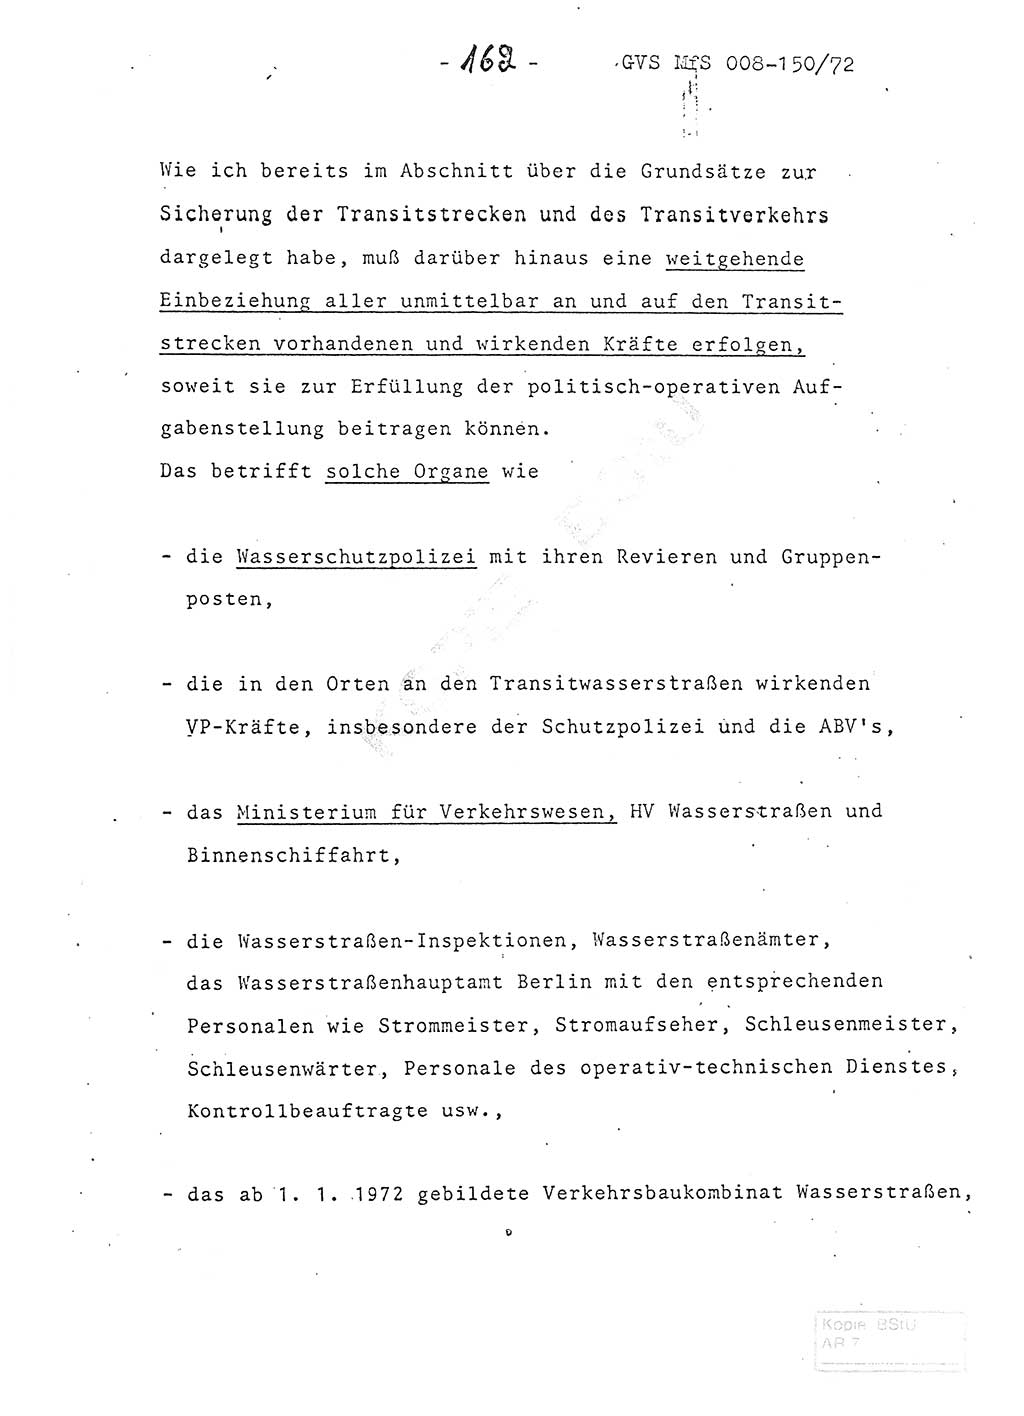 Referat (Entwurf) des Genossen Minister (Generaloberst Erich Mielke) auf der Dienstkonferenz 1972, Ministerium für Staatssicherheit (MfS) [Deutsche Demokratische Republik (DDR)], Der Minister, Geheime Verschlußsache (GVS) 008-150/72, Berlin 25.2.1972, Seite 162 (Ref. Entw. DK MfS DDR Min. GVS 008-150/72 1972, S. 162)